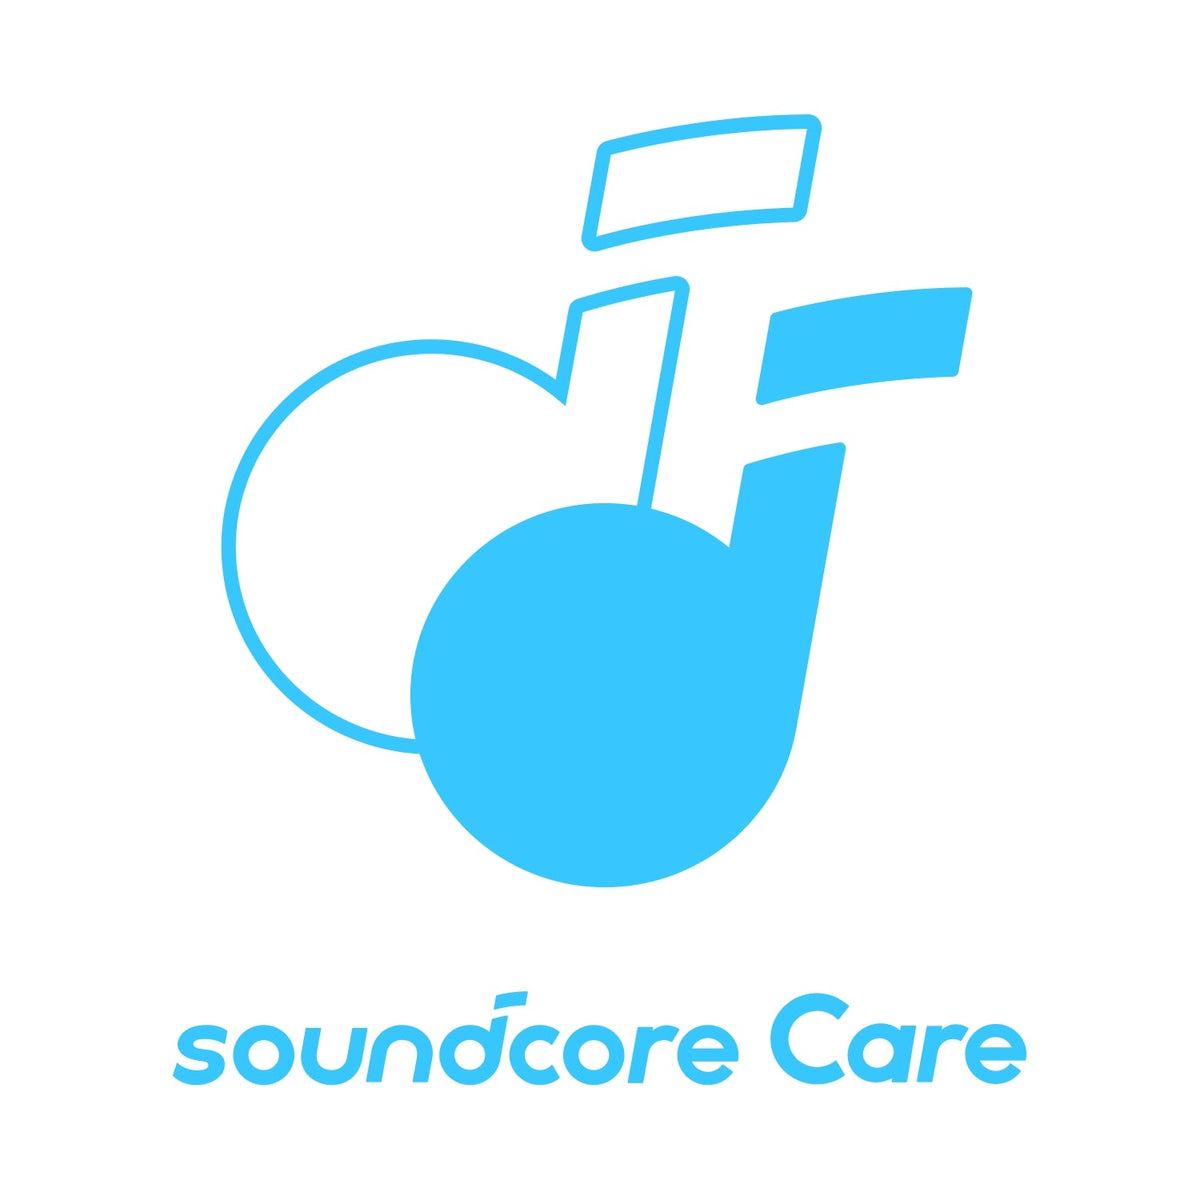 soundcore care